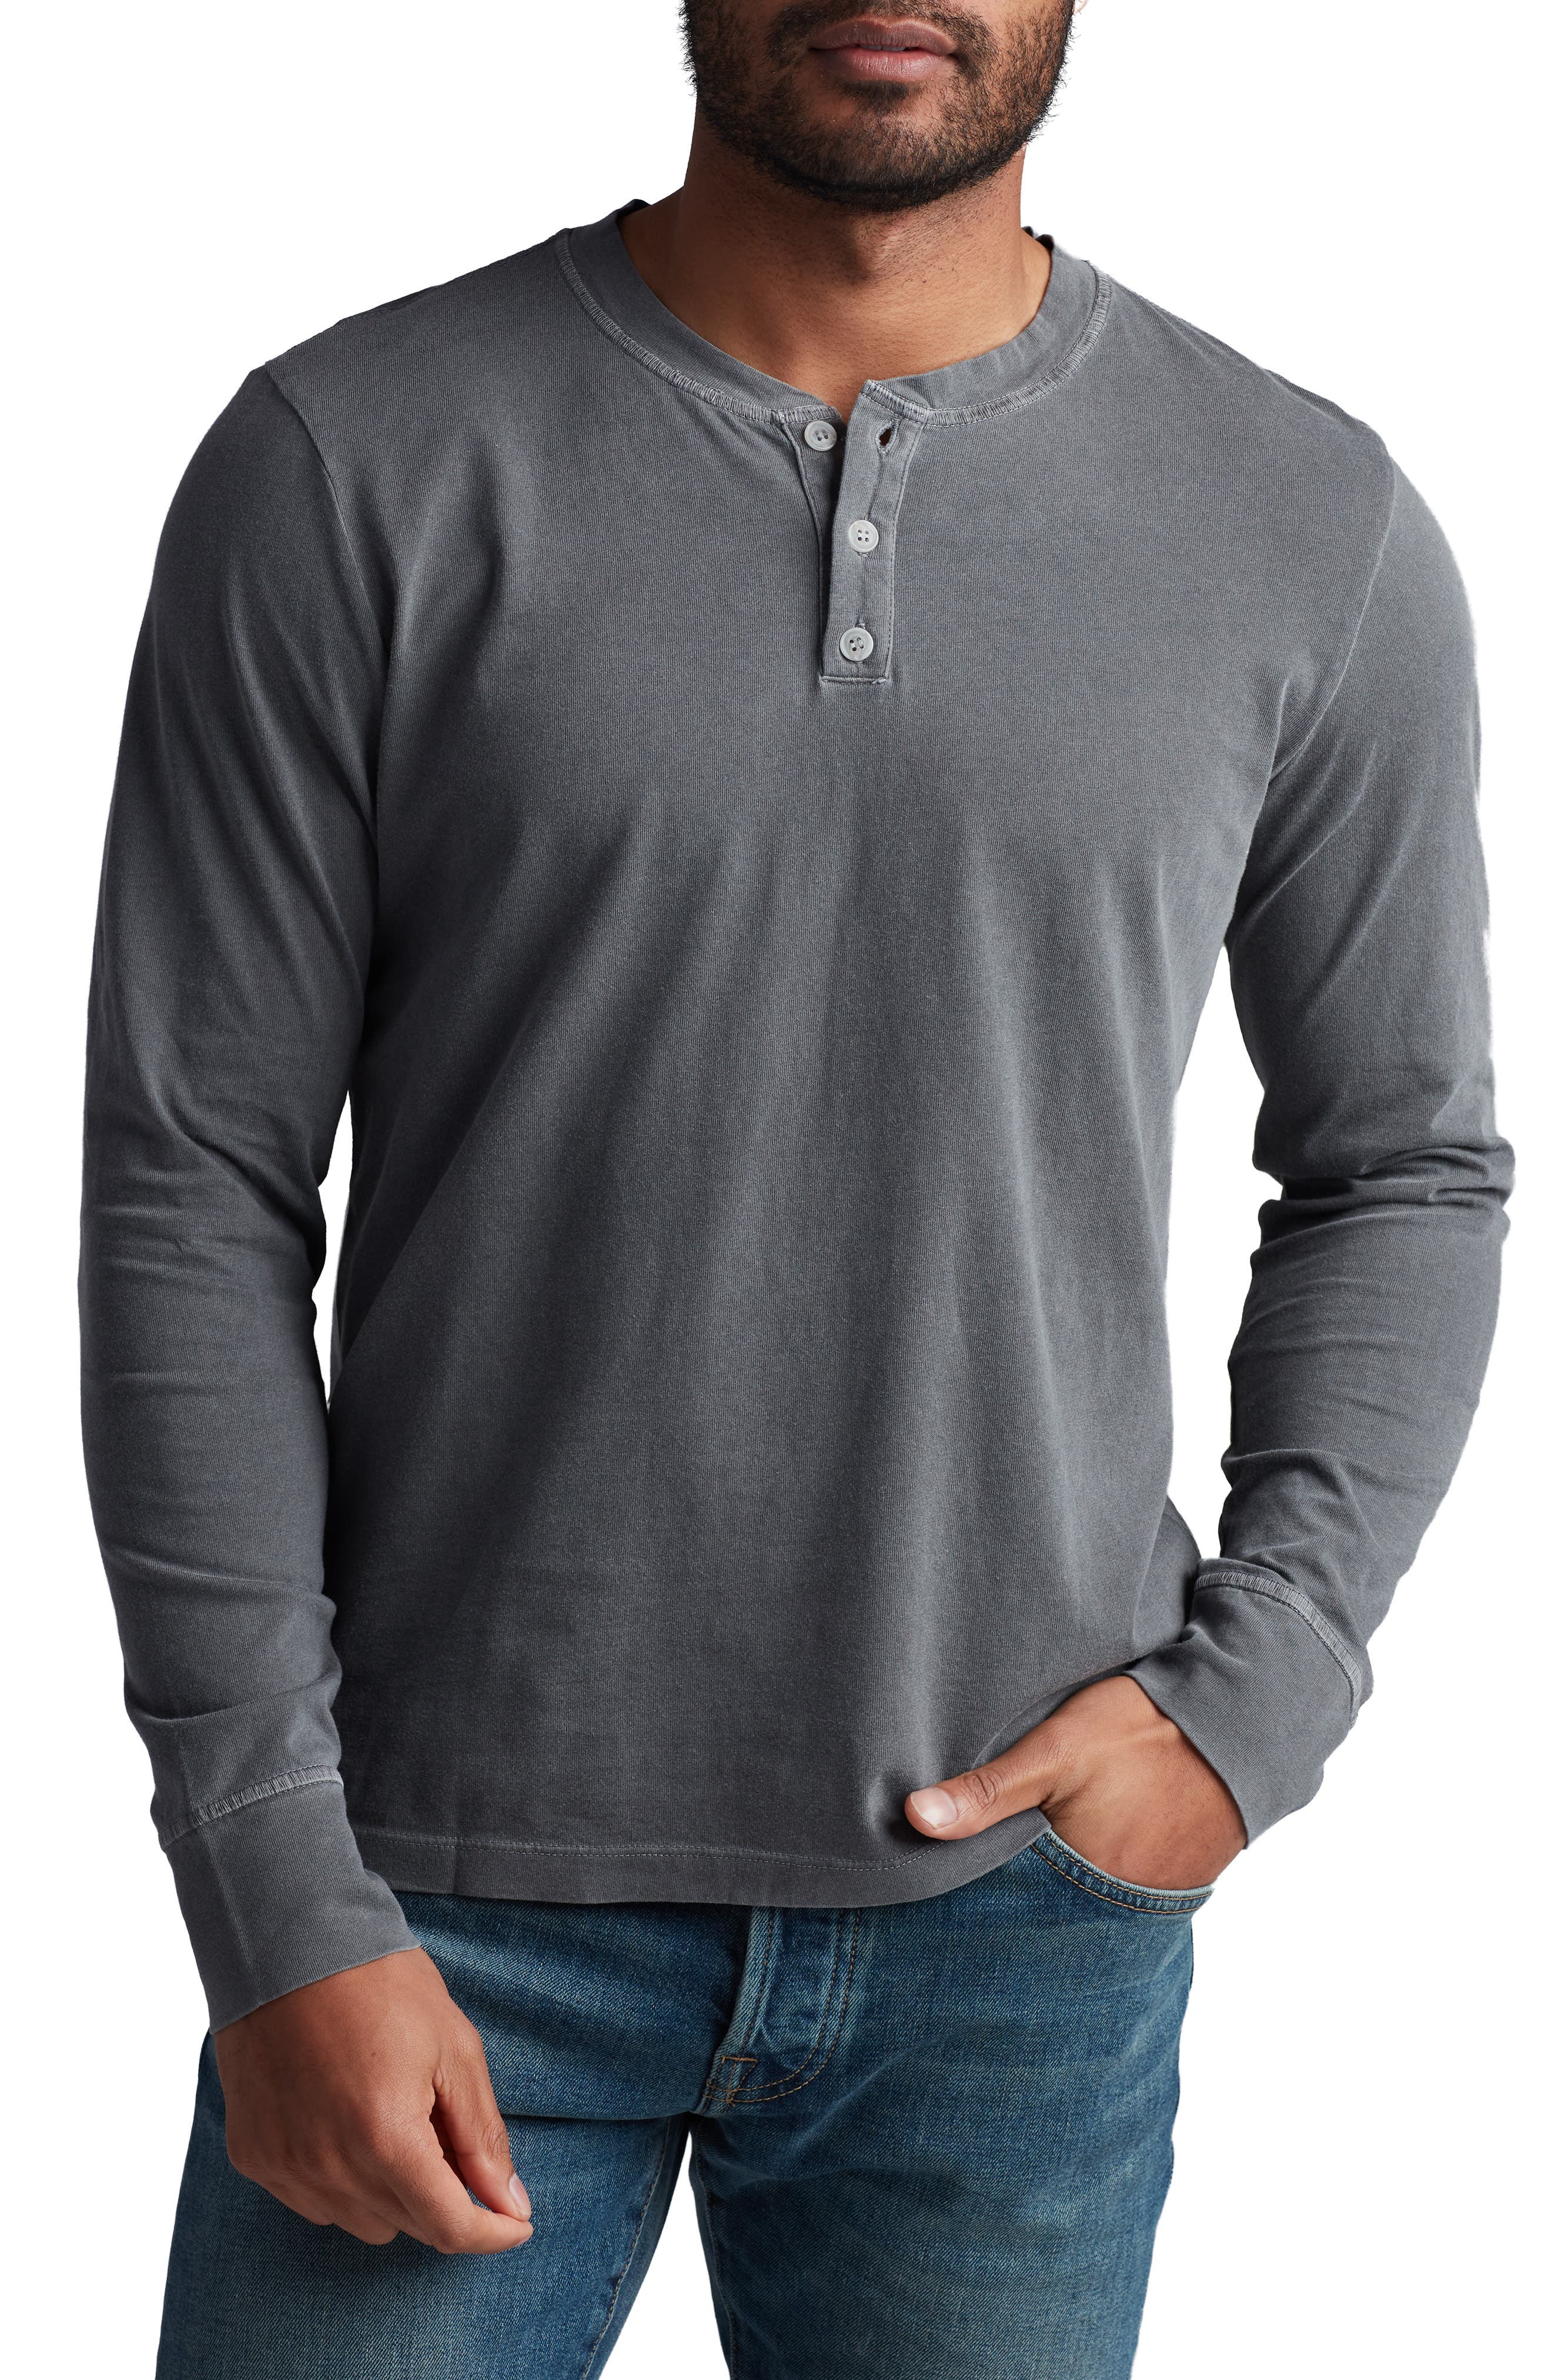 Mens Long Sleeve Linen Shirts Henleys Button Shirt Standing Collar Round Neck Shirt Top Black 